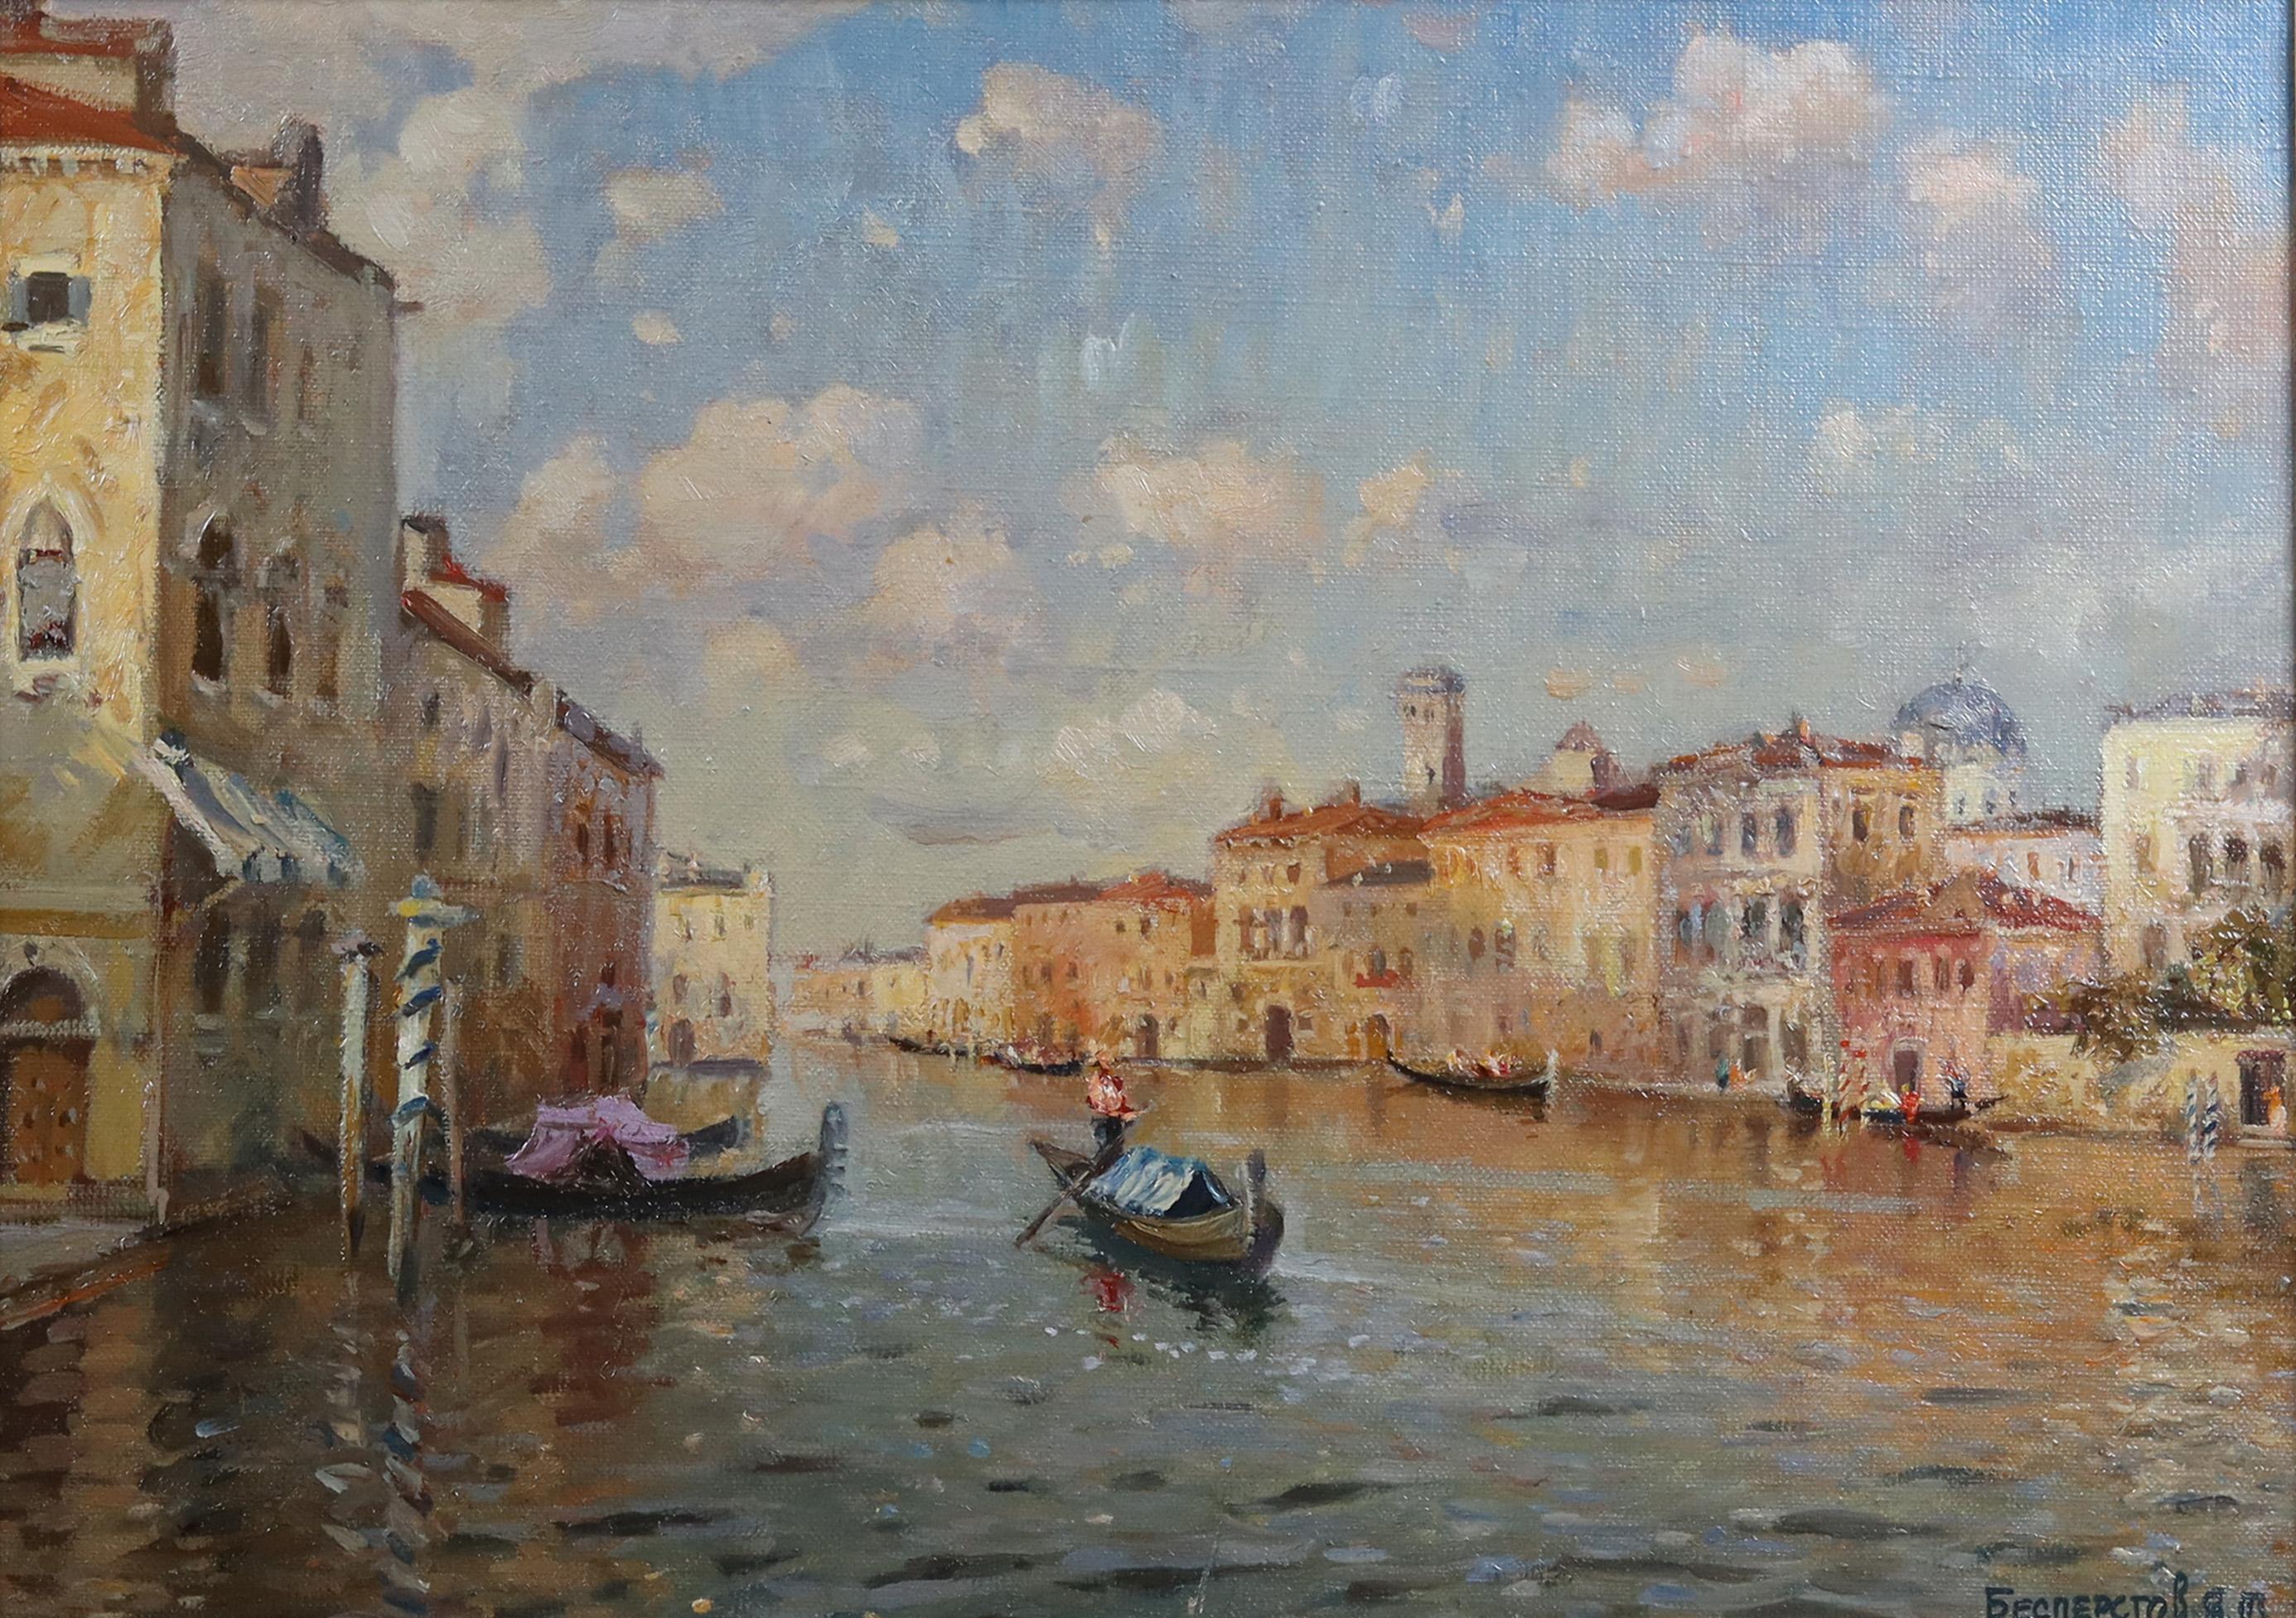  Une scène de canal vénitien - Impressionnisme Painting par Yakov Besperstov